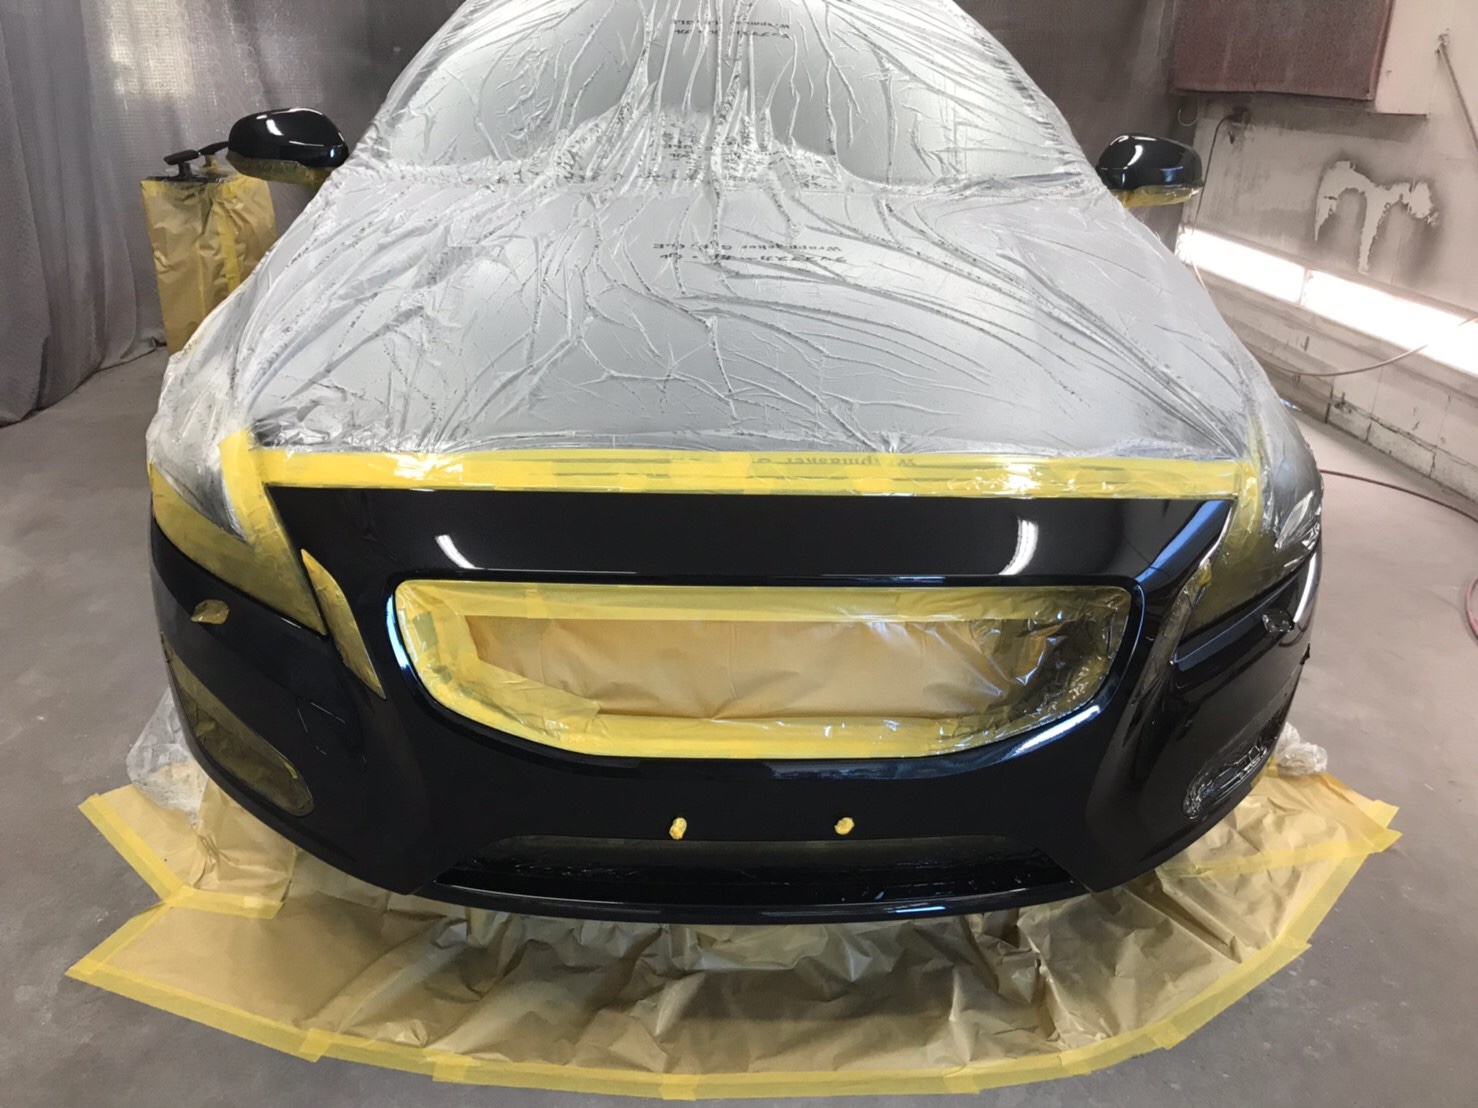 ボルボ V70 飛び石 小傷 修理 フロントバンパー 左ドア 塗装 Rin Cars株式会社 リンカーズ 稲沢市の自動車整備 板金 国産車からアメ車 までお任せください